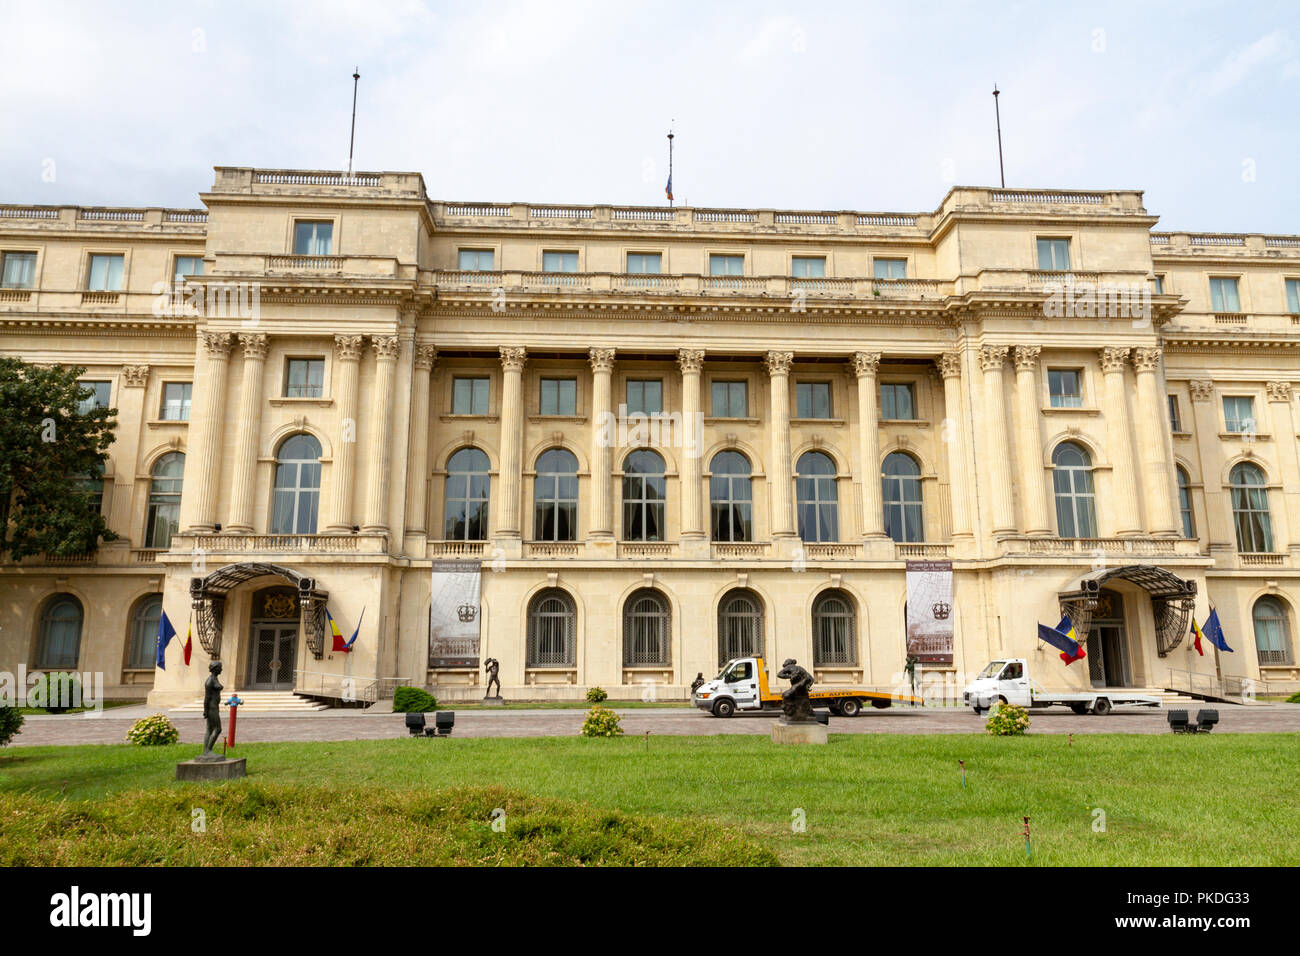 Le Palais Royal de Bucarest (ou juste le Palais Royal, Palatul Regal) qui abrite le Musée National d'Art de Roumanie à Bucarest, Roumanie. Banque D'Images